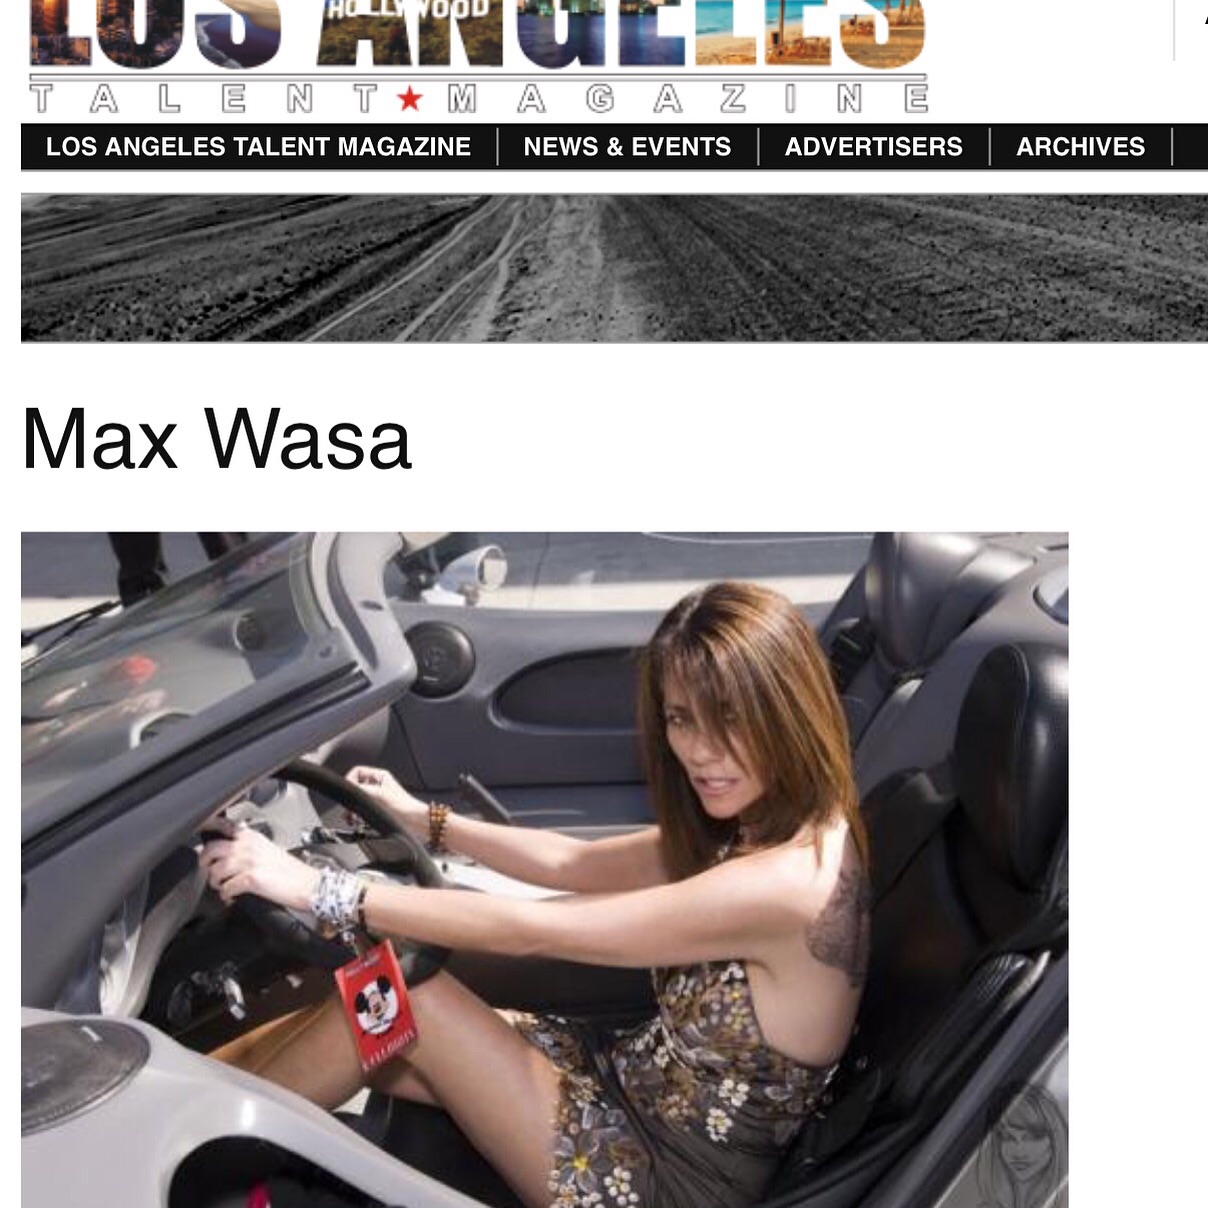 Max Wasa